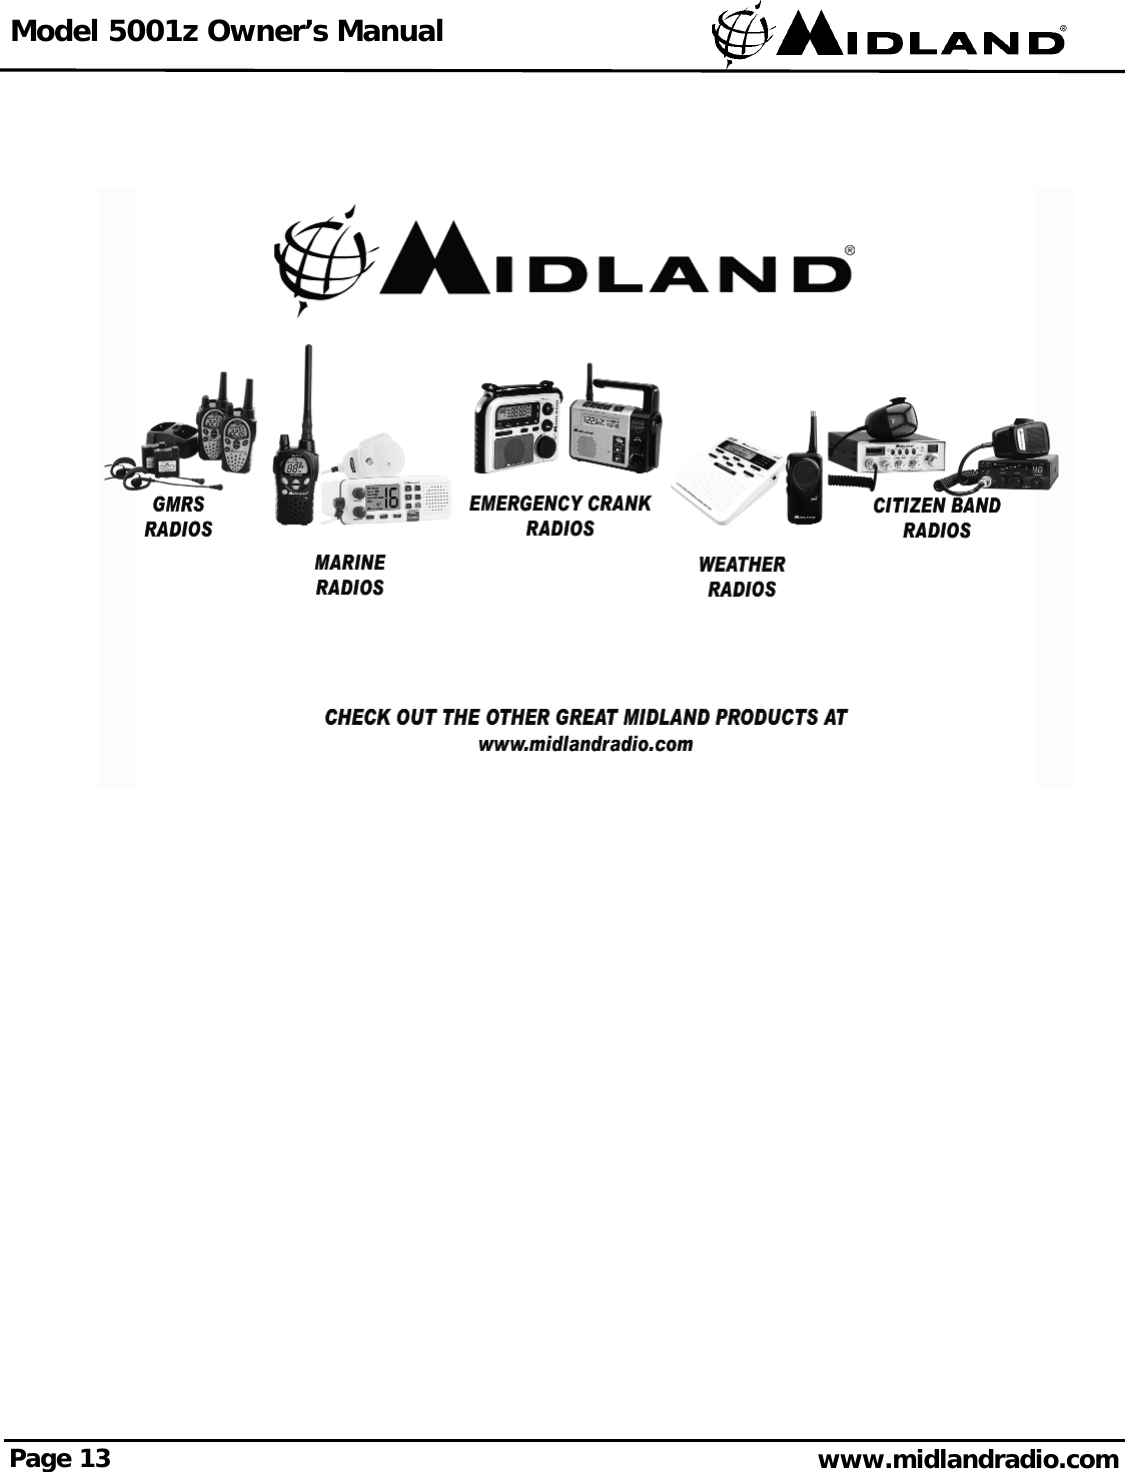 Model 5001z Owner’s ManualPage 13 www.midlandradio.com